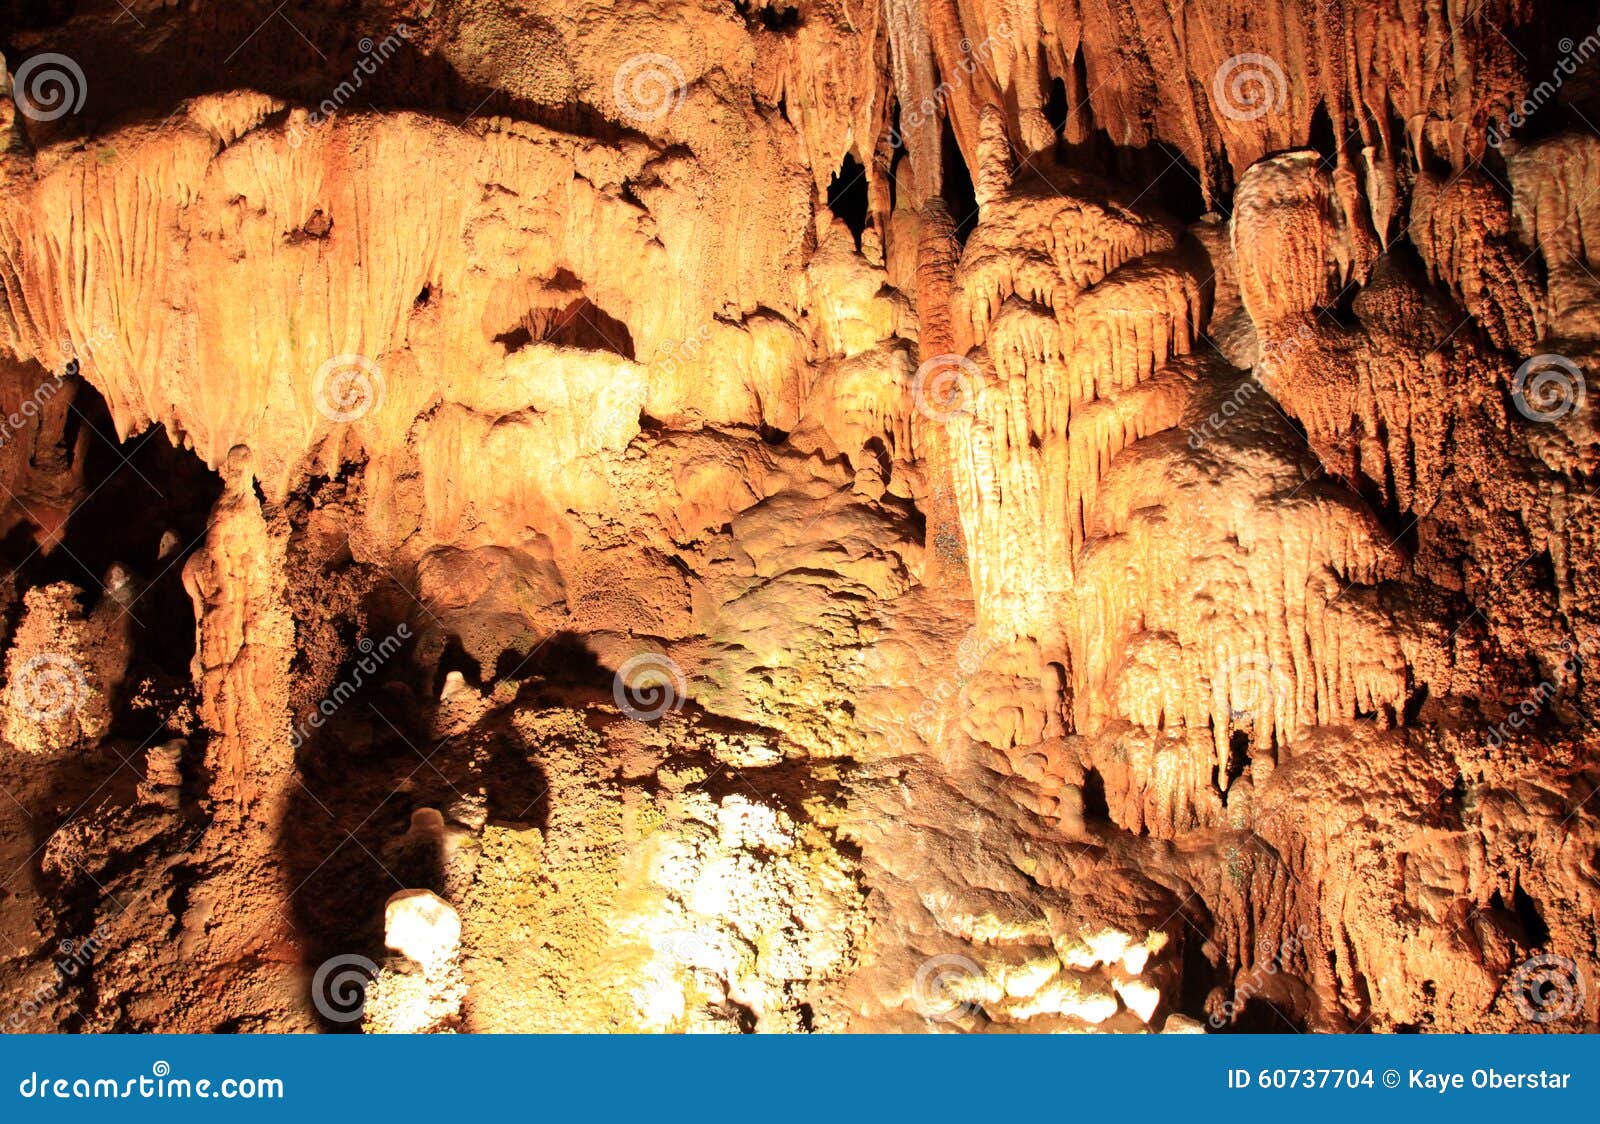 fantastic caverns